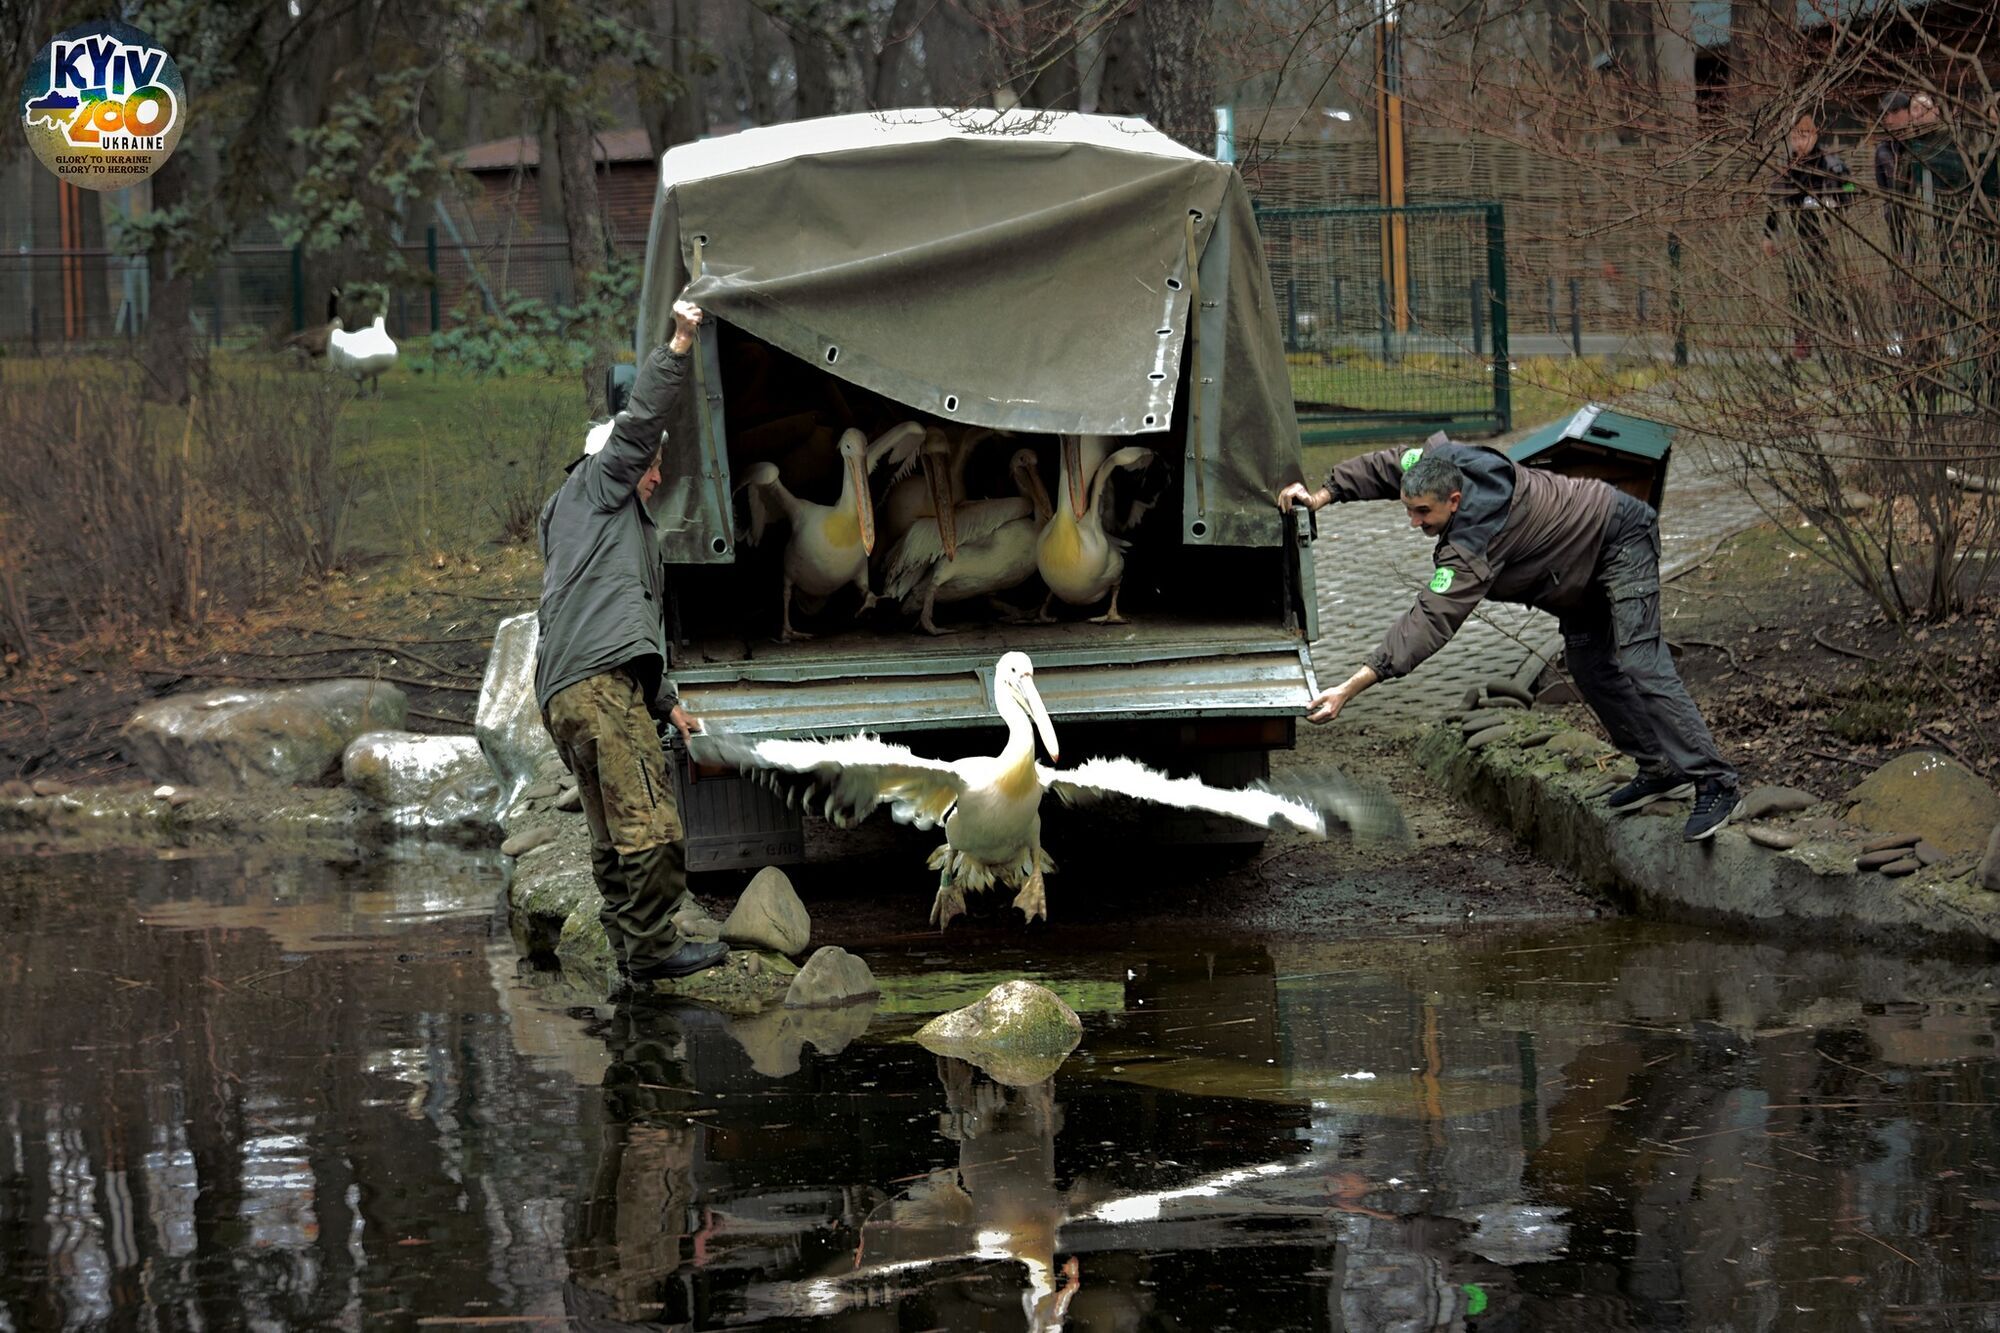 У Київському зоопарку завдяки погоді на воду випустили велику родину пеліканів. Фото та відео